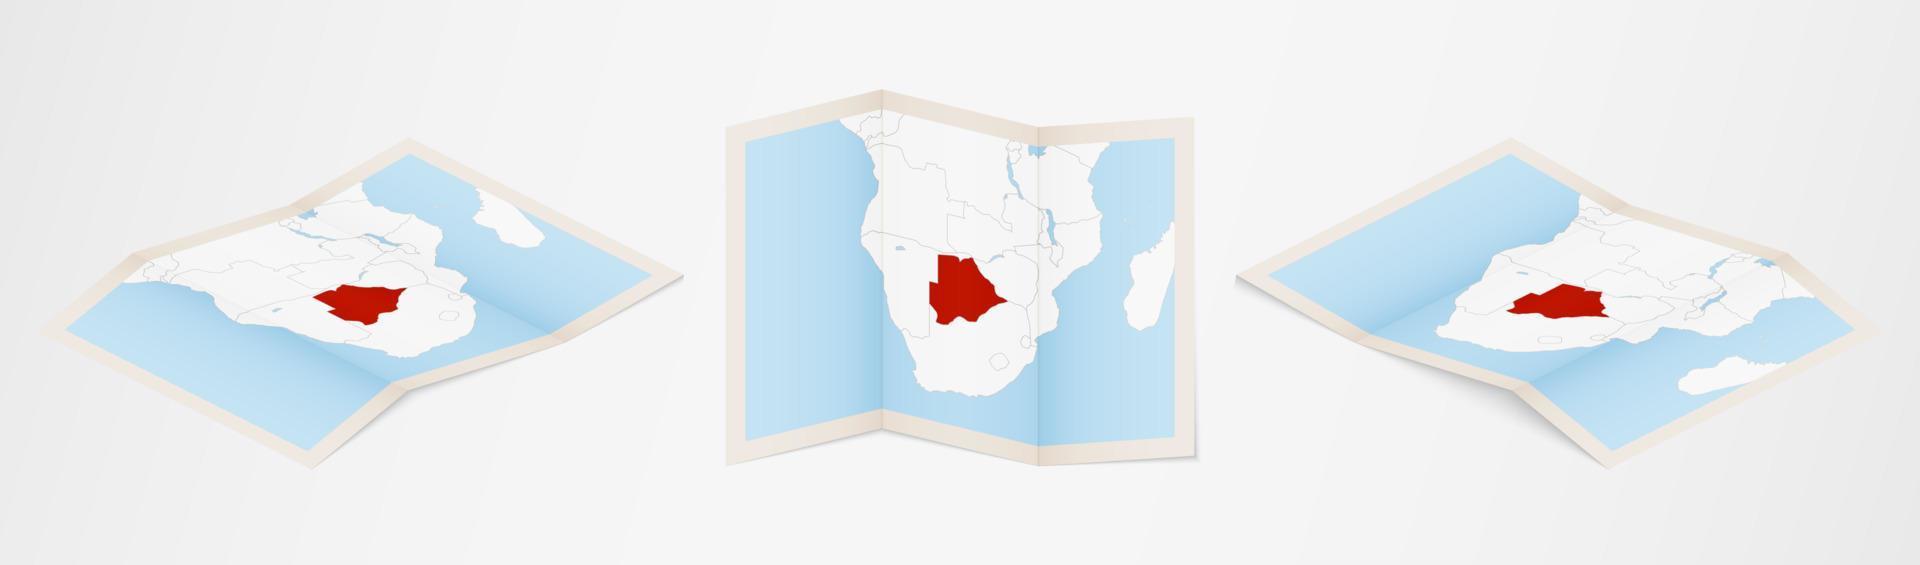 Faltkarte von Botswana in drei verschiedenen Versionen. vektor